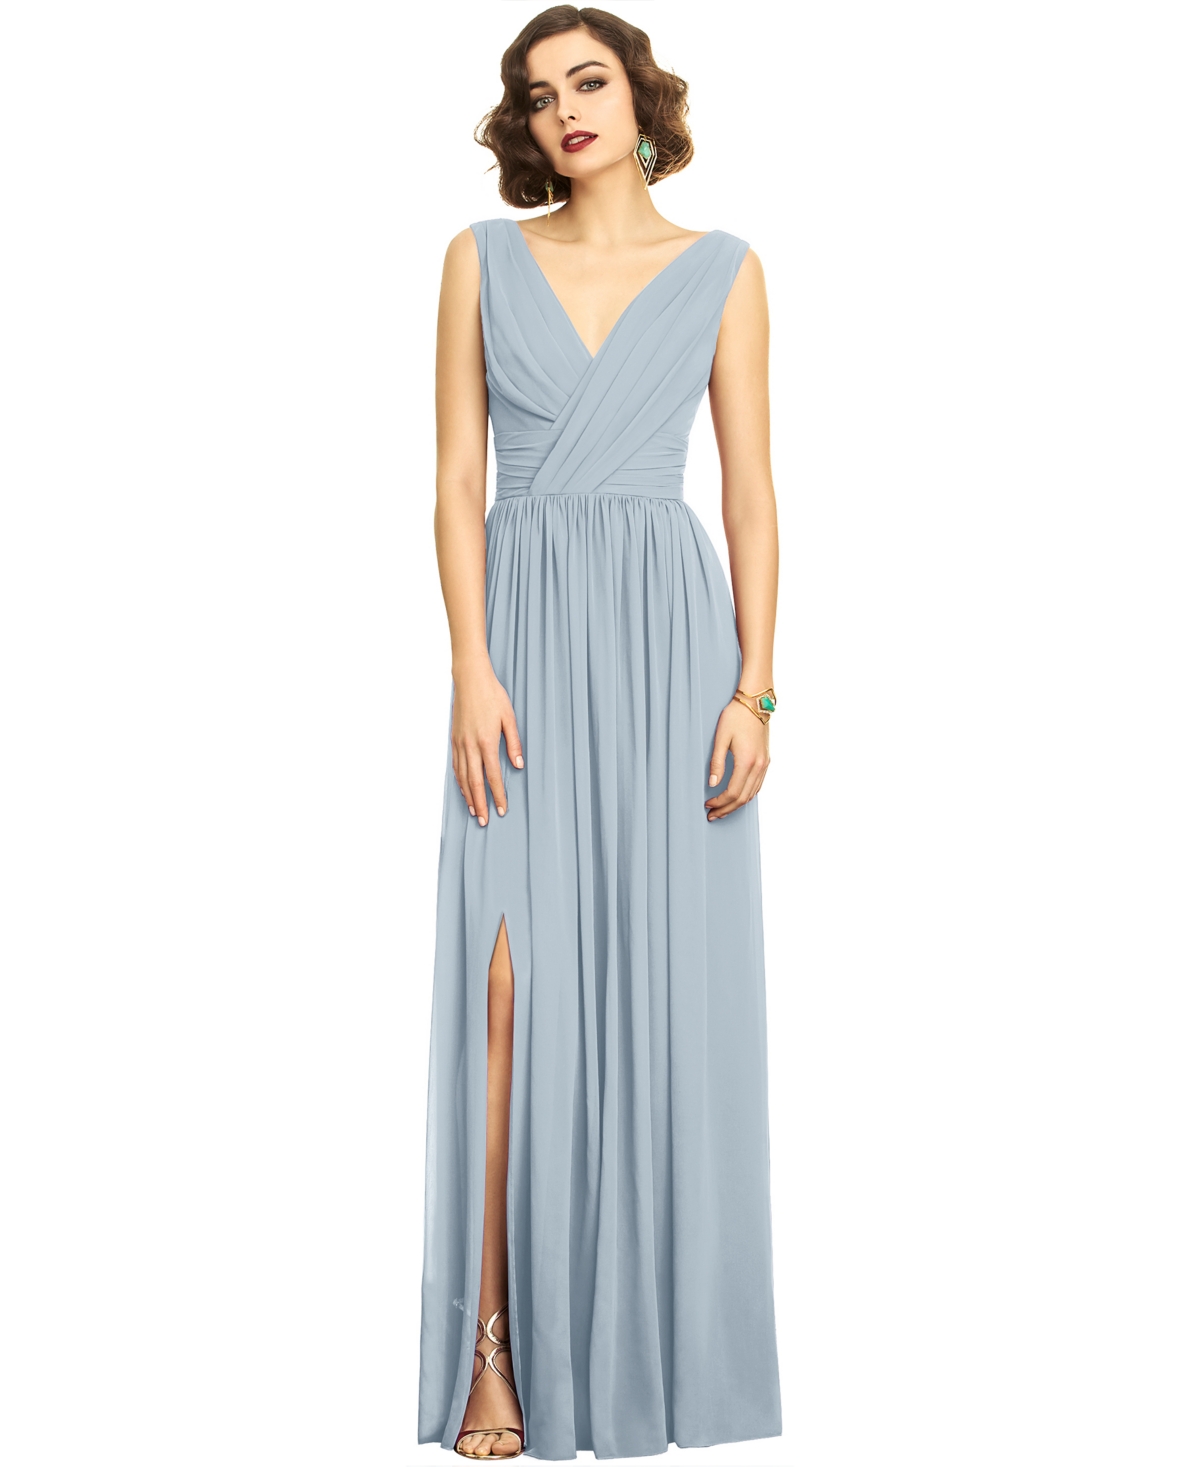 Vintage Evening Dresses, Vintage Formal Dresses Dessy Collection Shirred Chiffon Gown - Mist Blue $273.00 AT vintagedancer.com